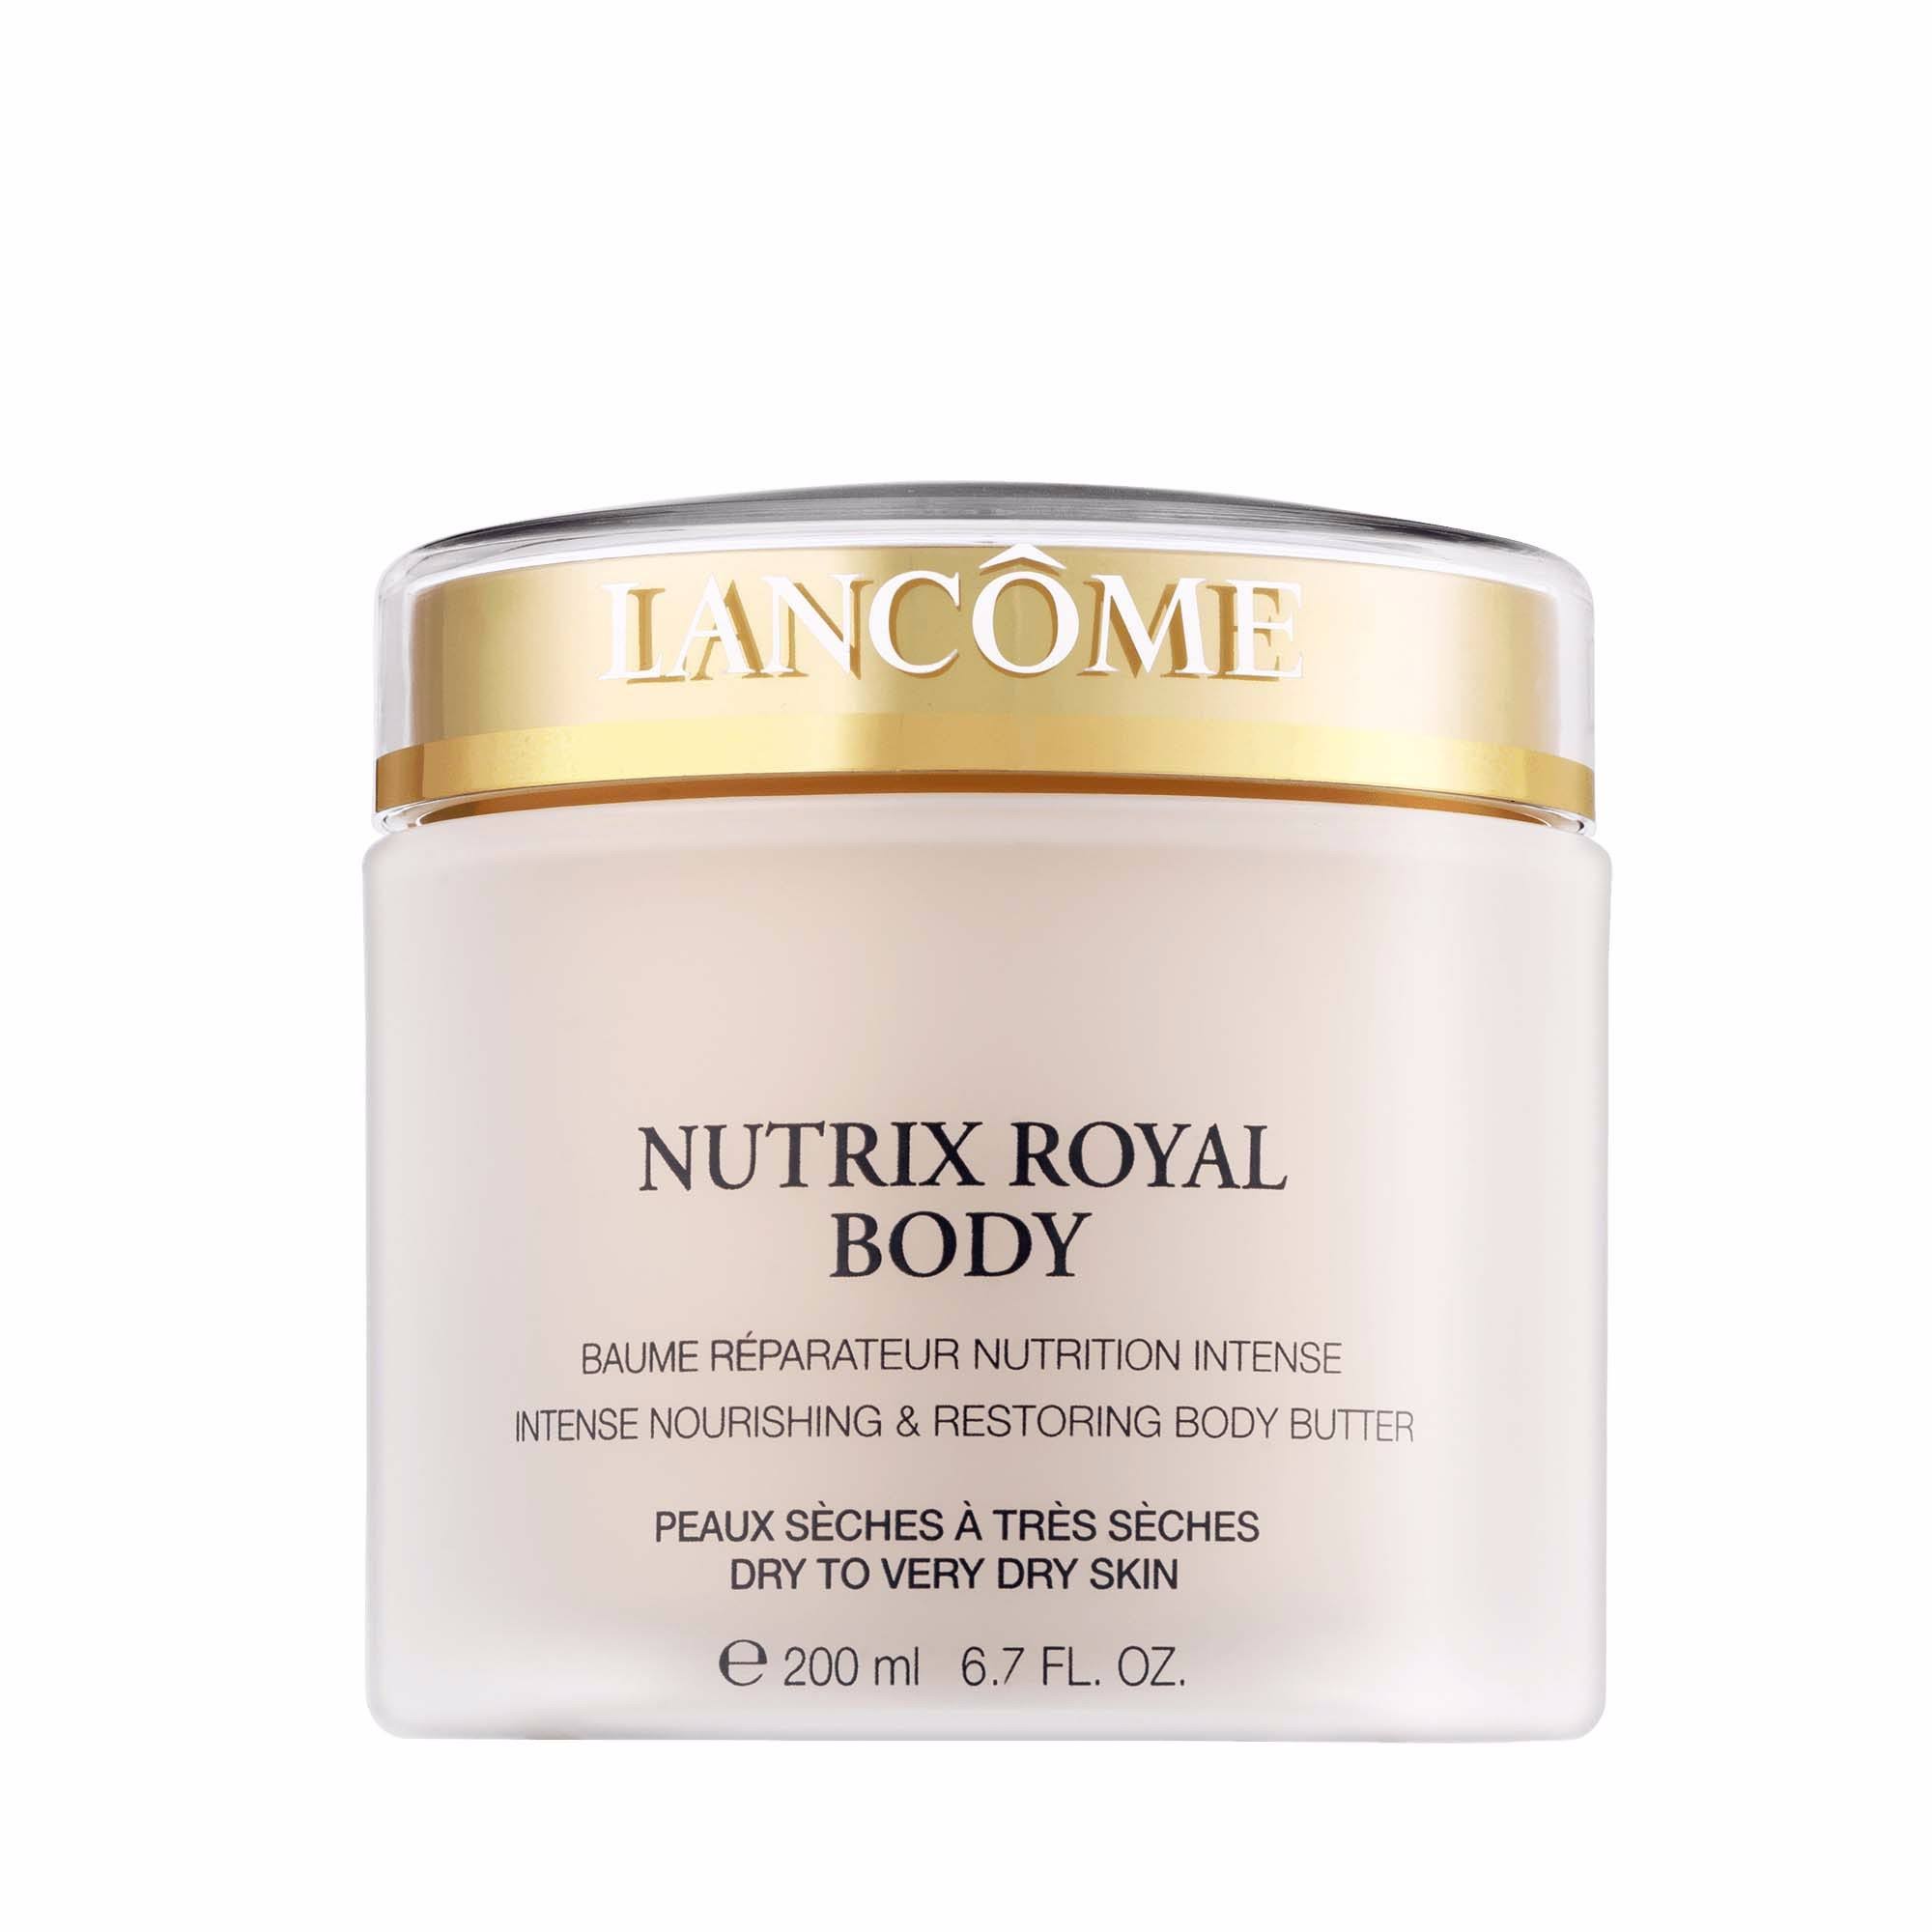 Lancome Nutrix Royal Body Butter - 200ml